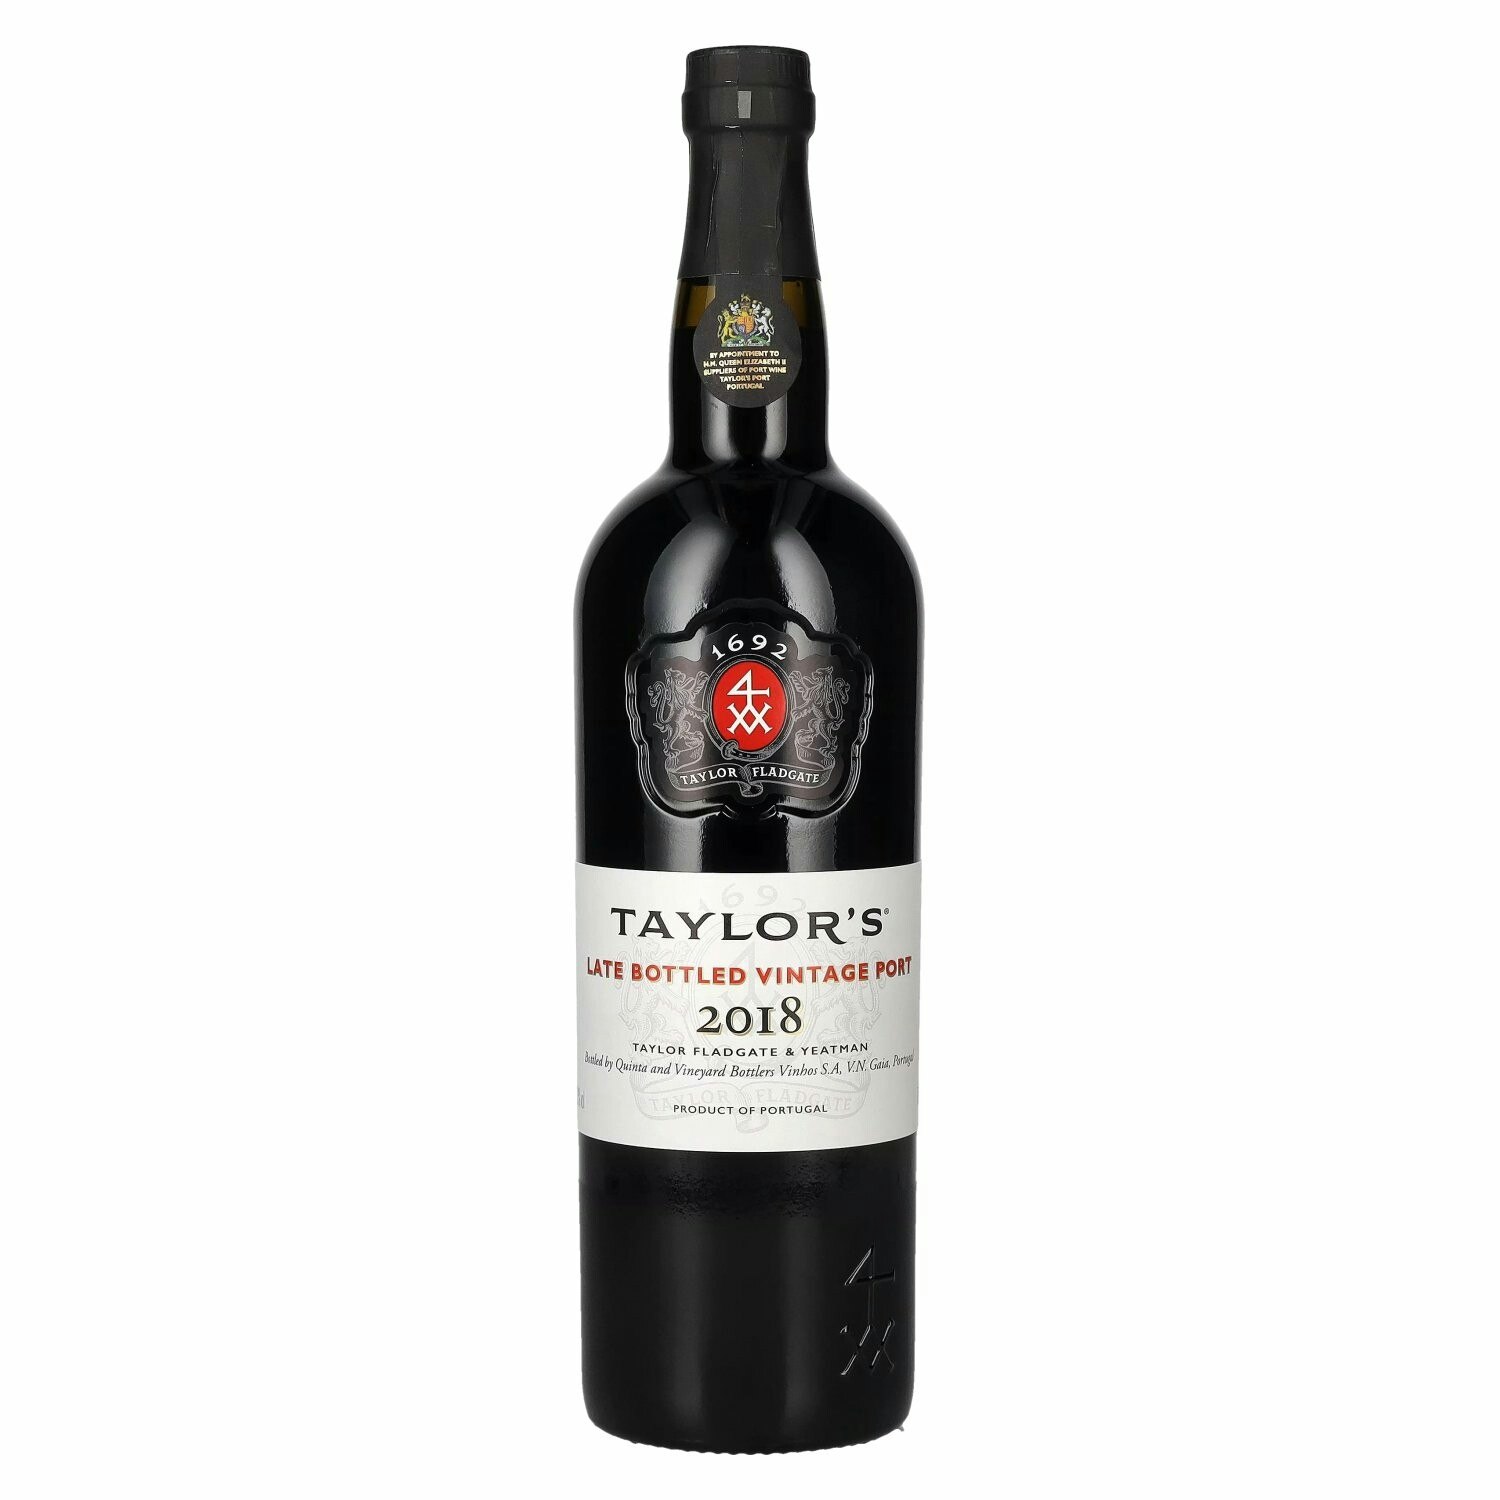 Taylor's Late Bottled Vintage Port 2018 20% Vol. 0,75l